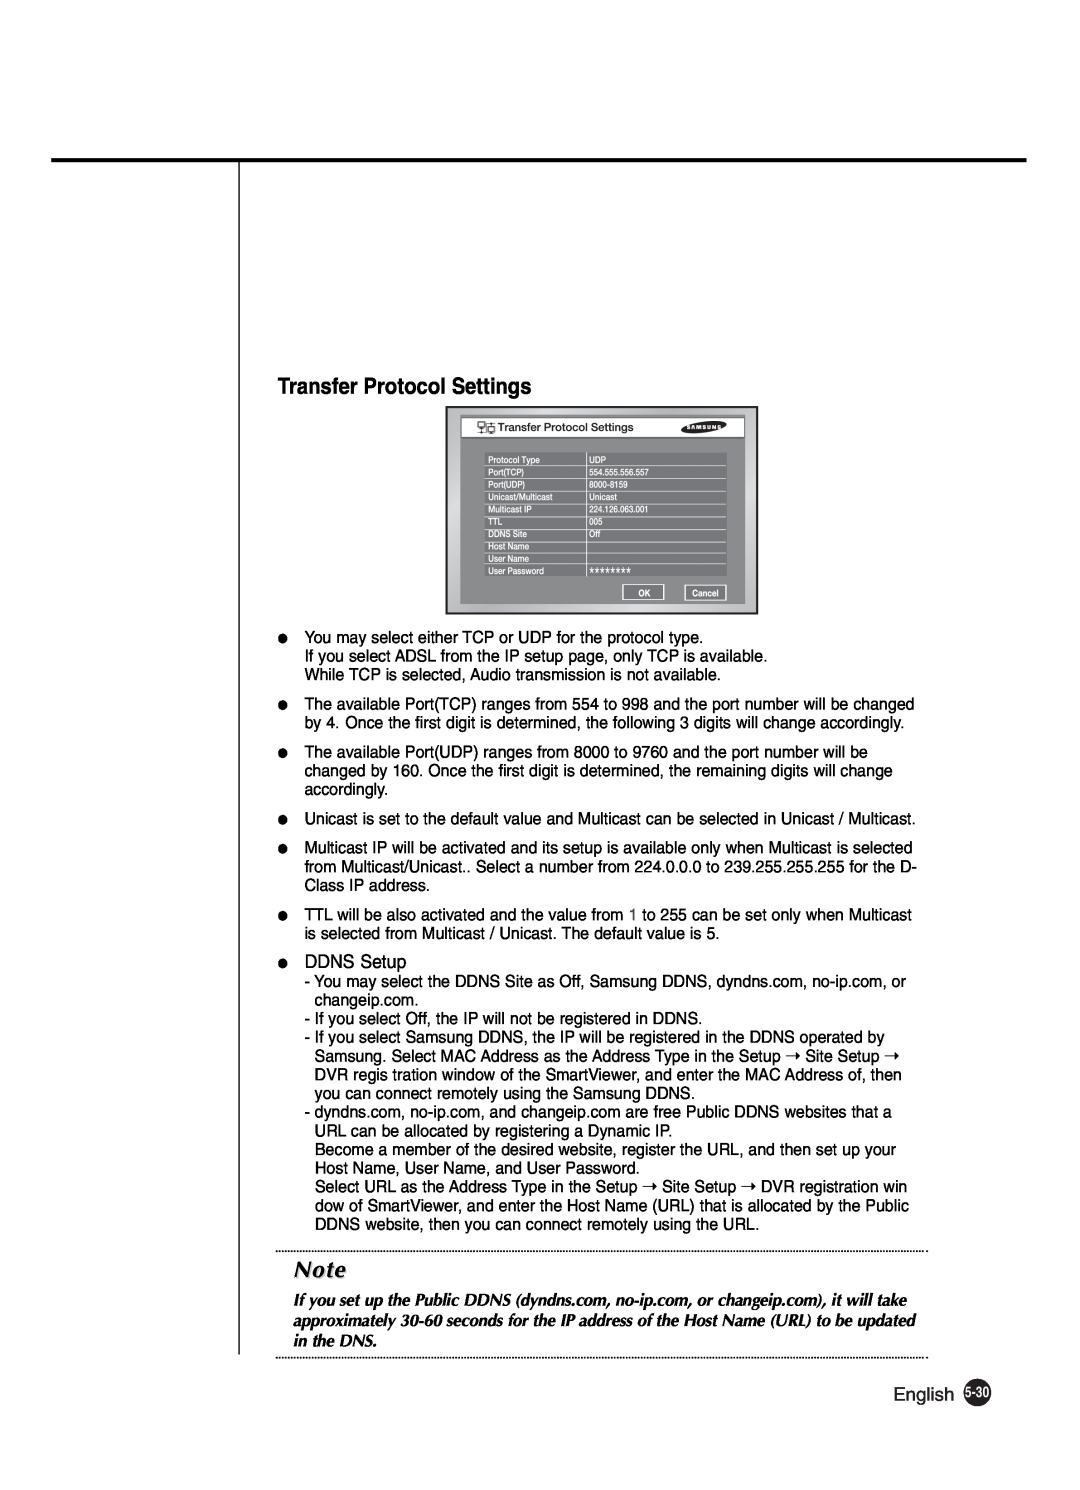 Samsung SHR-2042P250, SHR-2040P250 manual Transfer Protocol Settings, DDNS Setup, English 